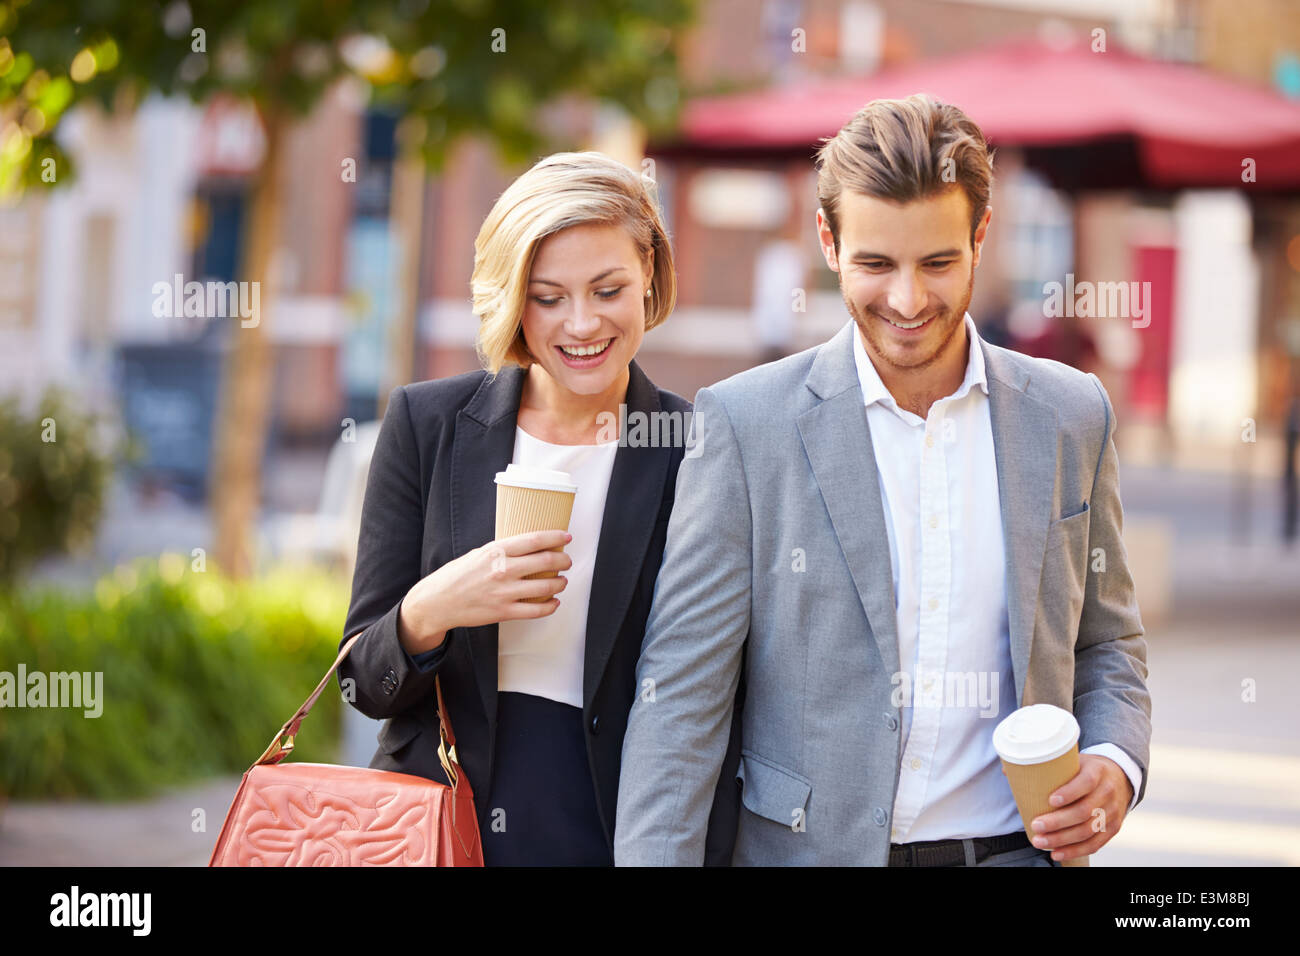 Business Couple Walking Through Park café à emporter Banque D'Images